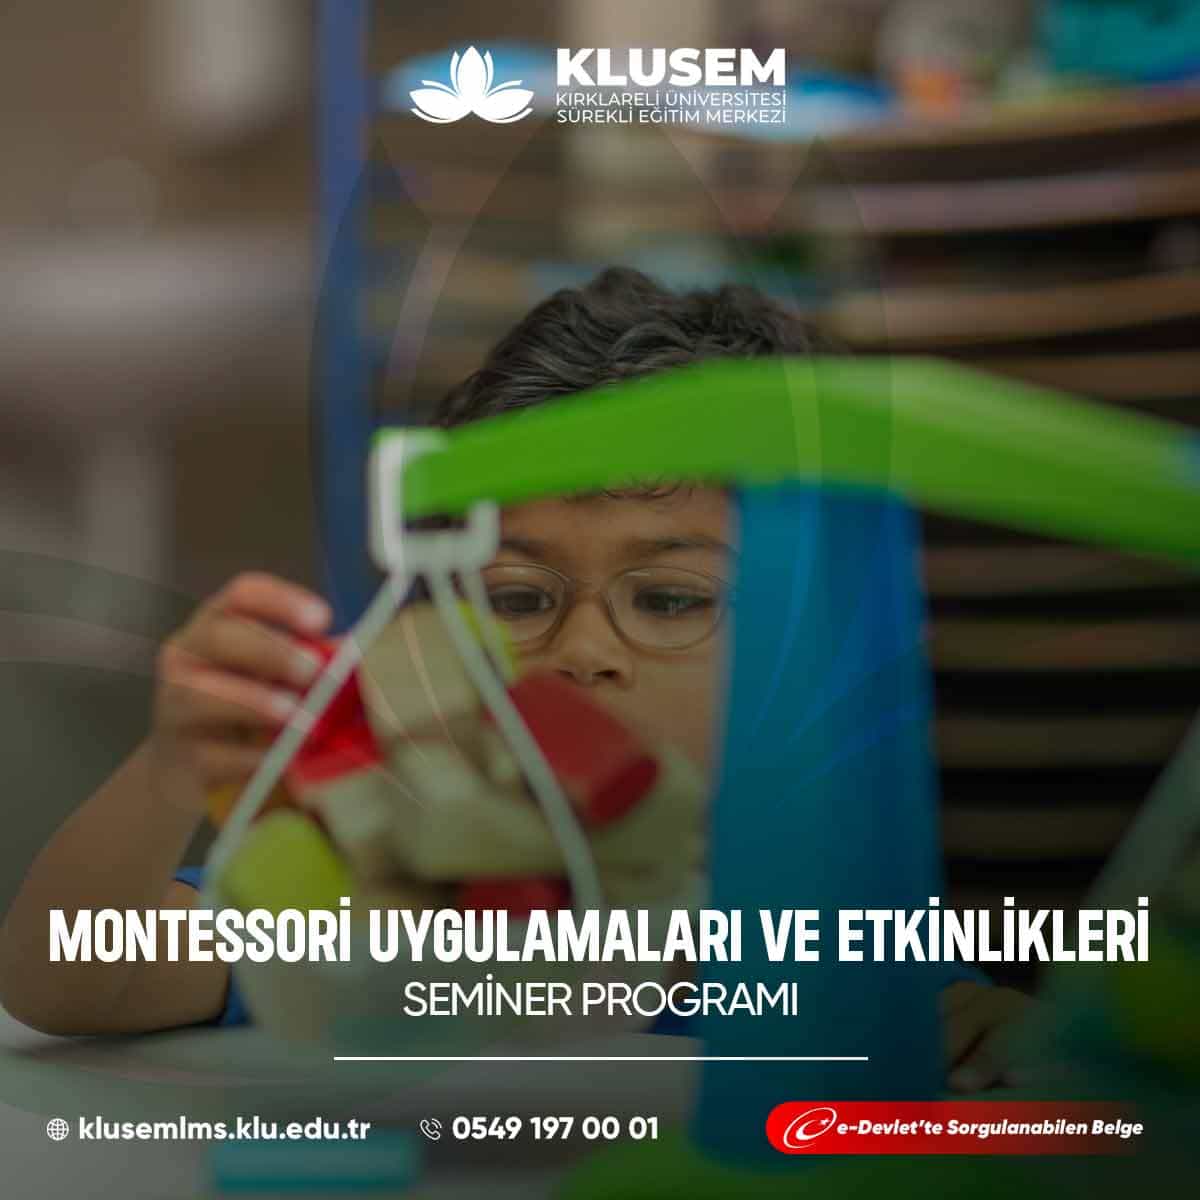 Montessori Uygulamaları ve Etkinlikleri, Maria Montessori'nin öğrenme ve öğretme yaklaşımına dayalı bir eğitim metodolojisini ifade eder. 